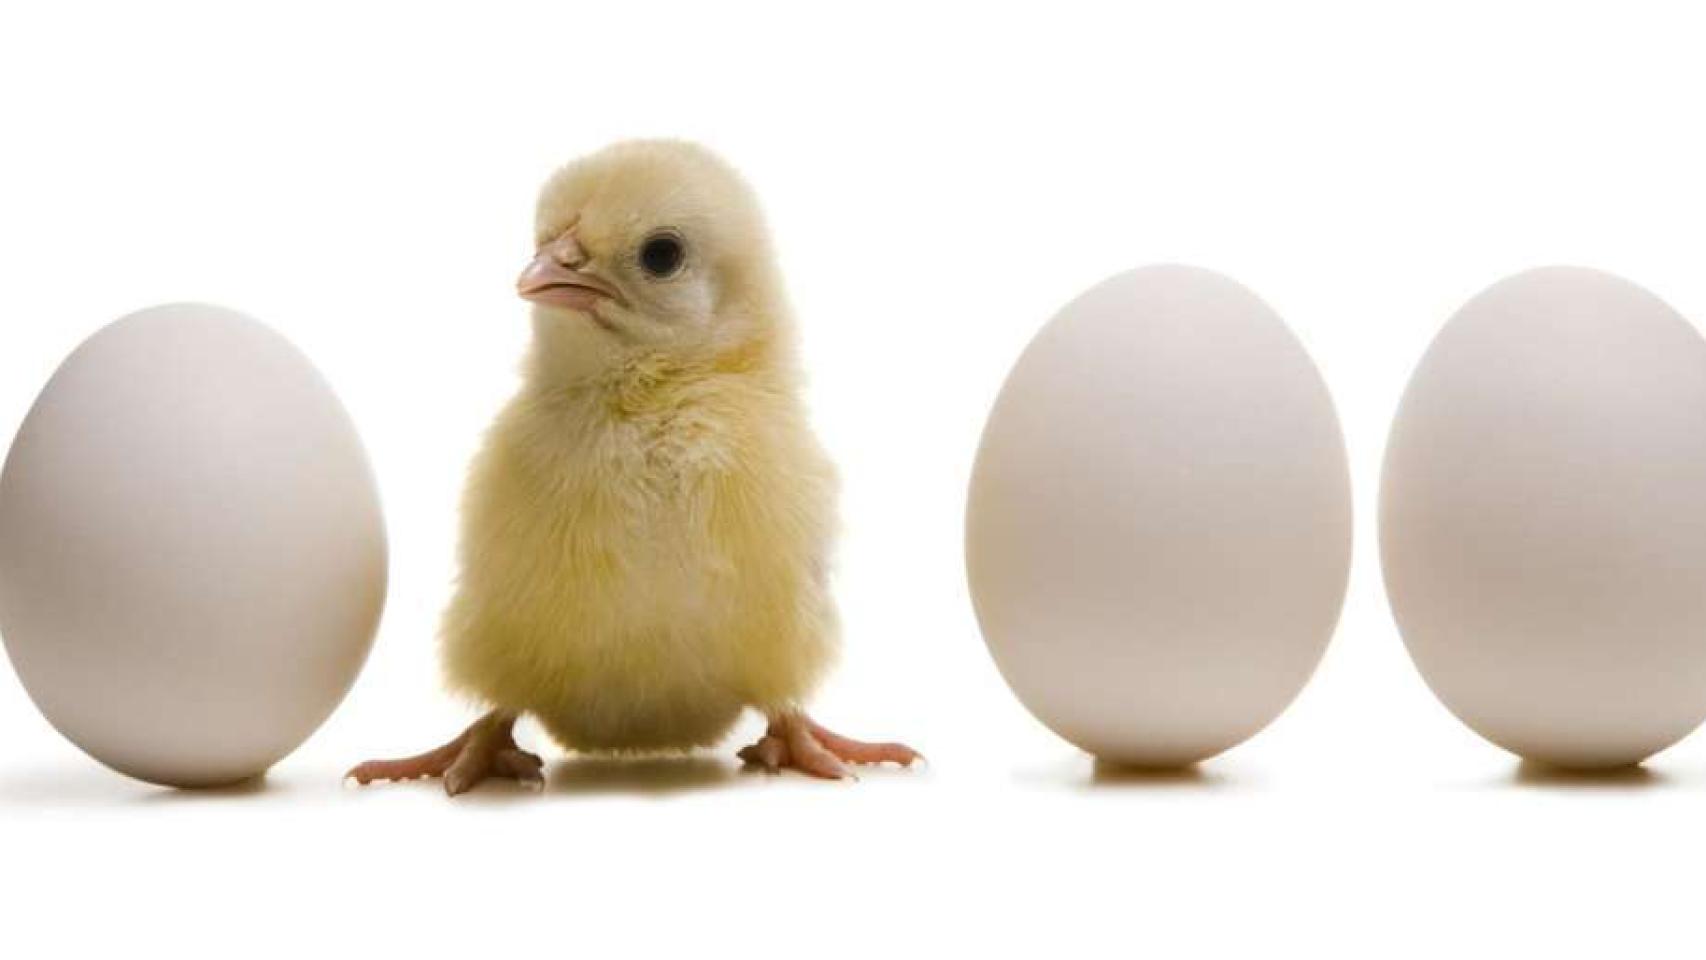 el huevo o la gallina